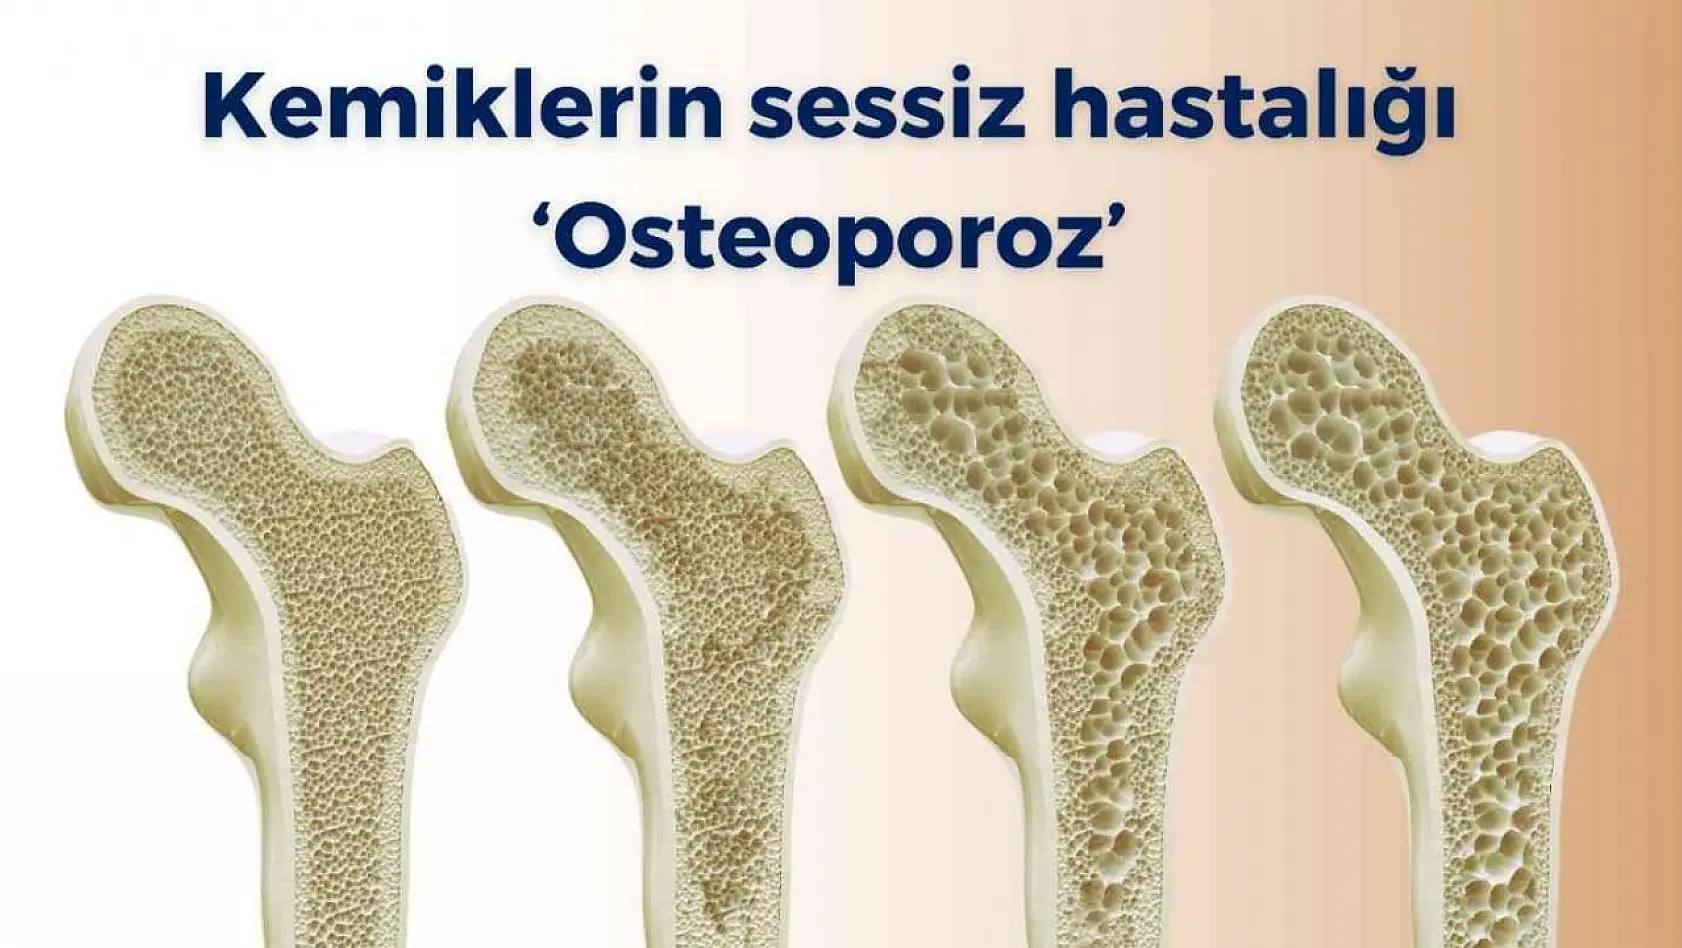 Kemiklerin sessiz hastalığı 'osteoporoz'